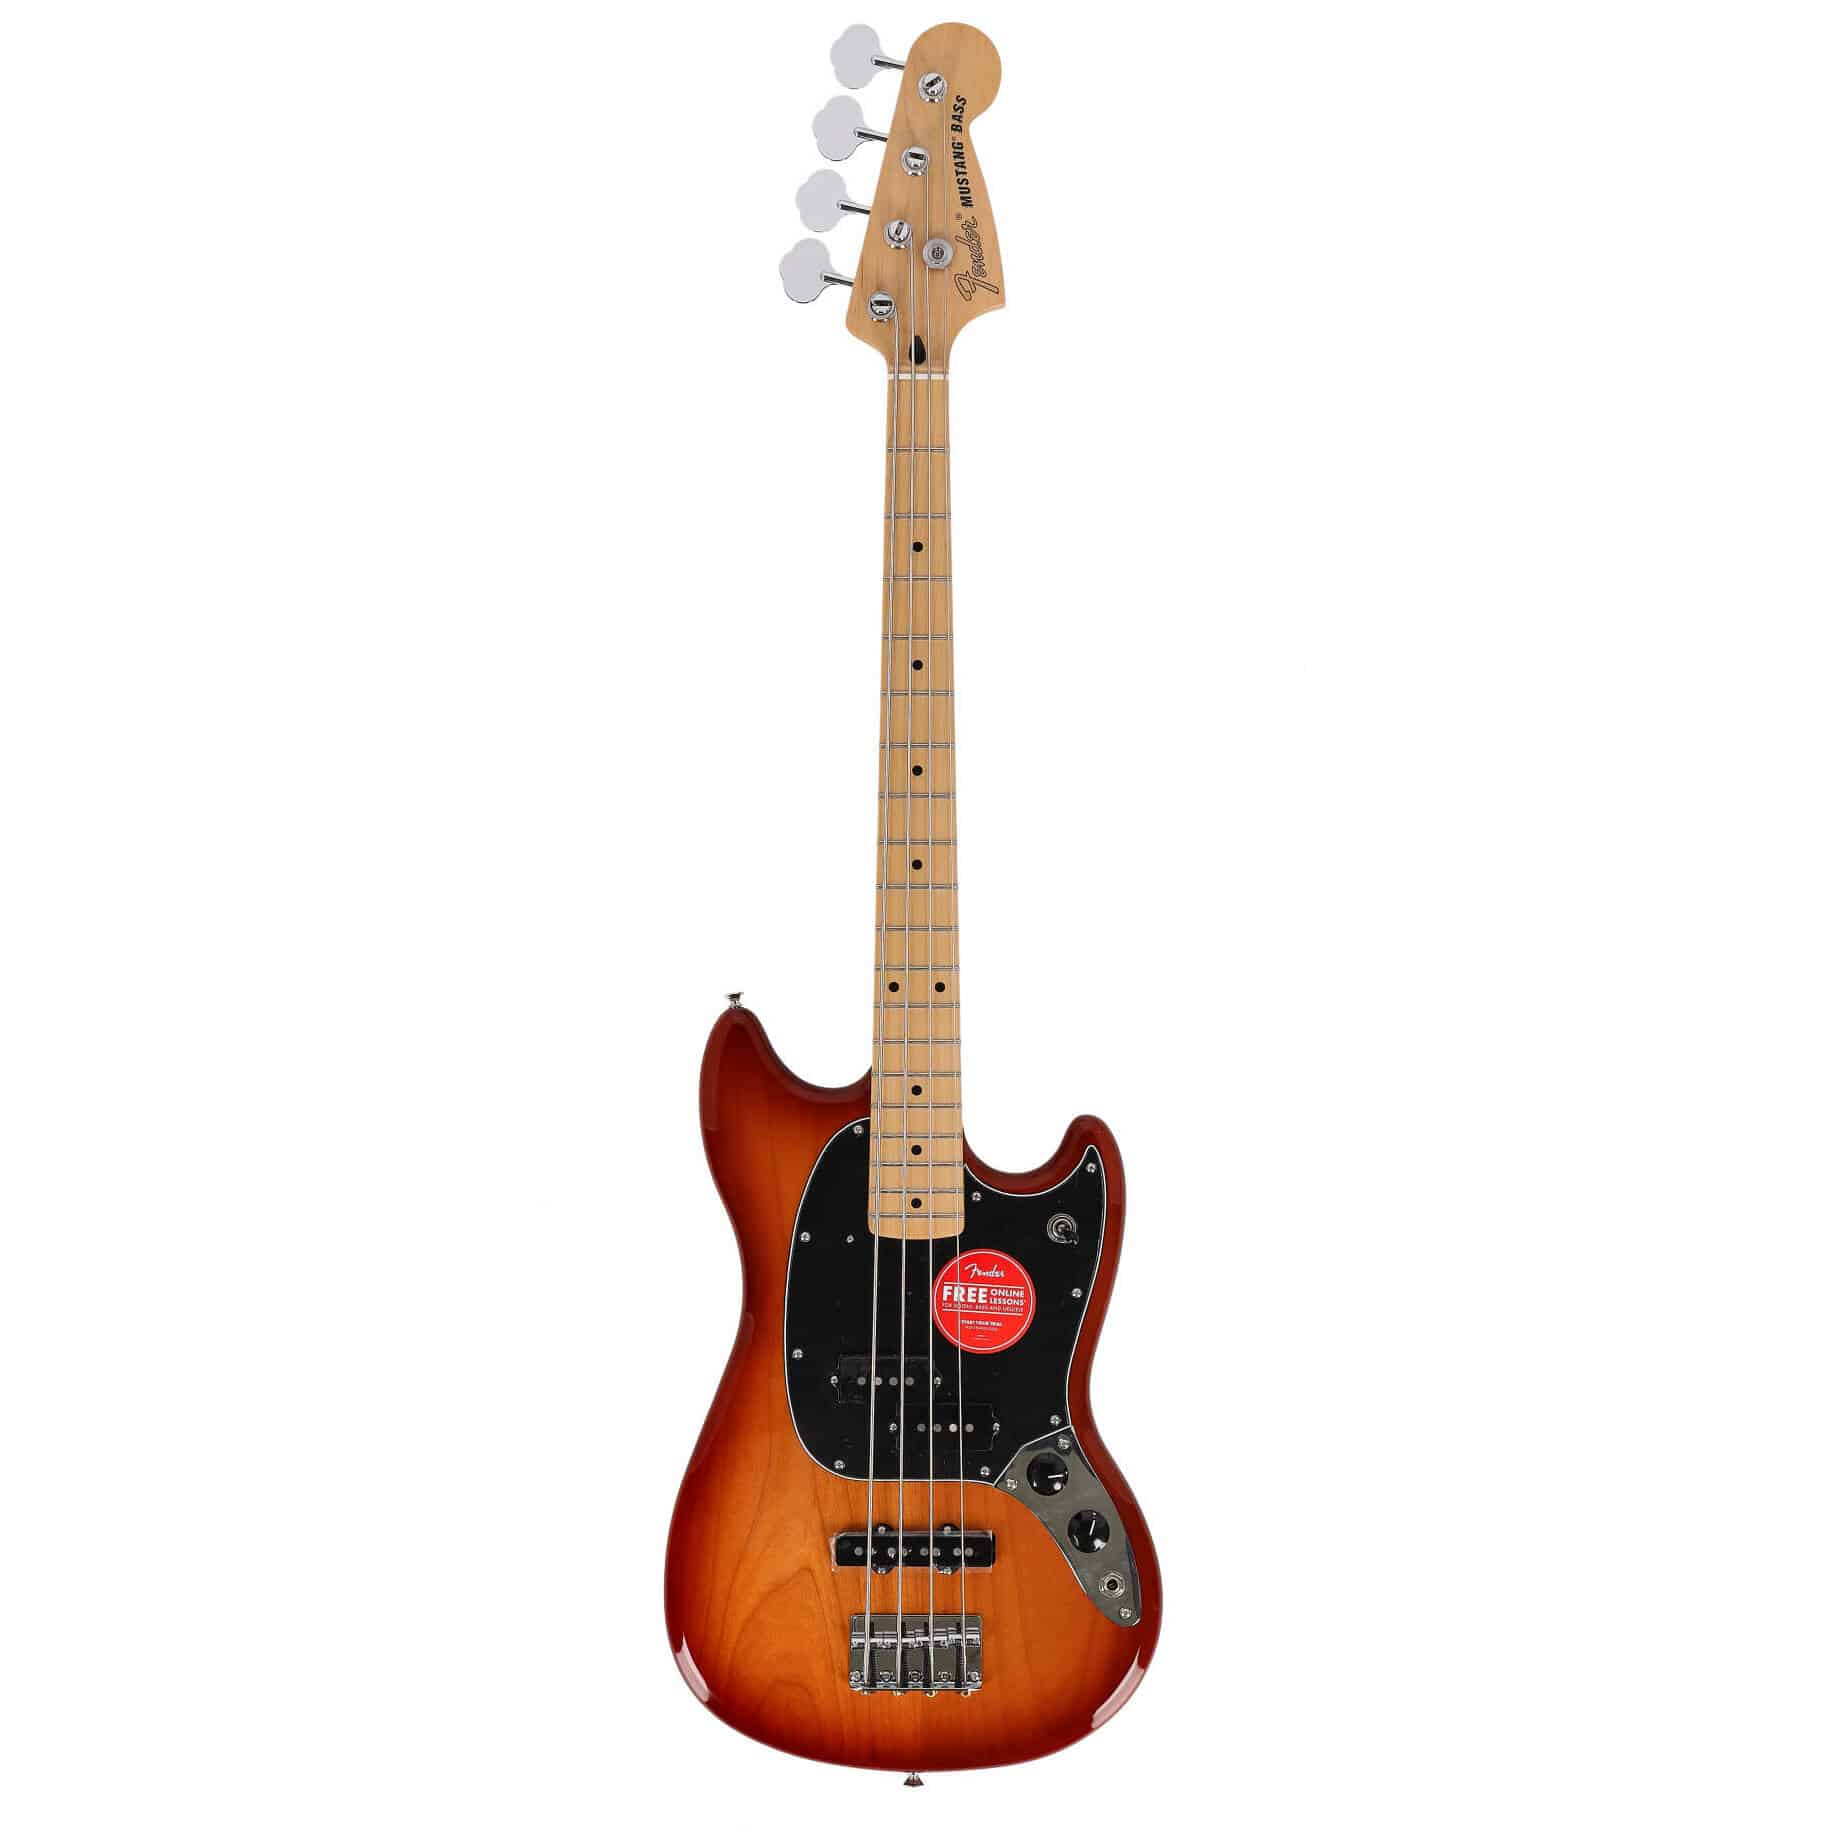 Fender Mustang Bass PJ MN Sienna Sunburst